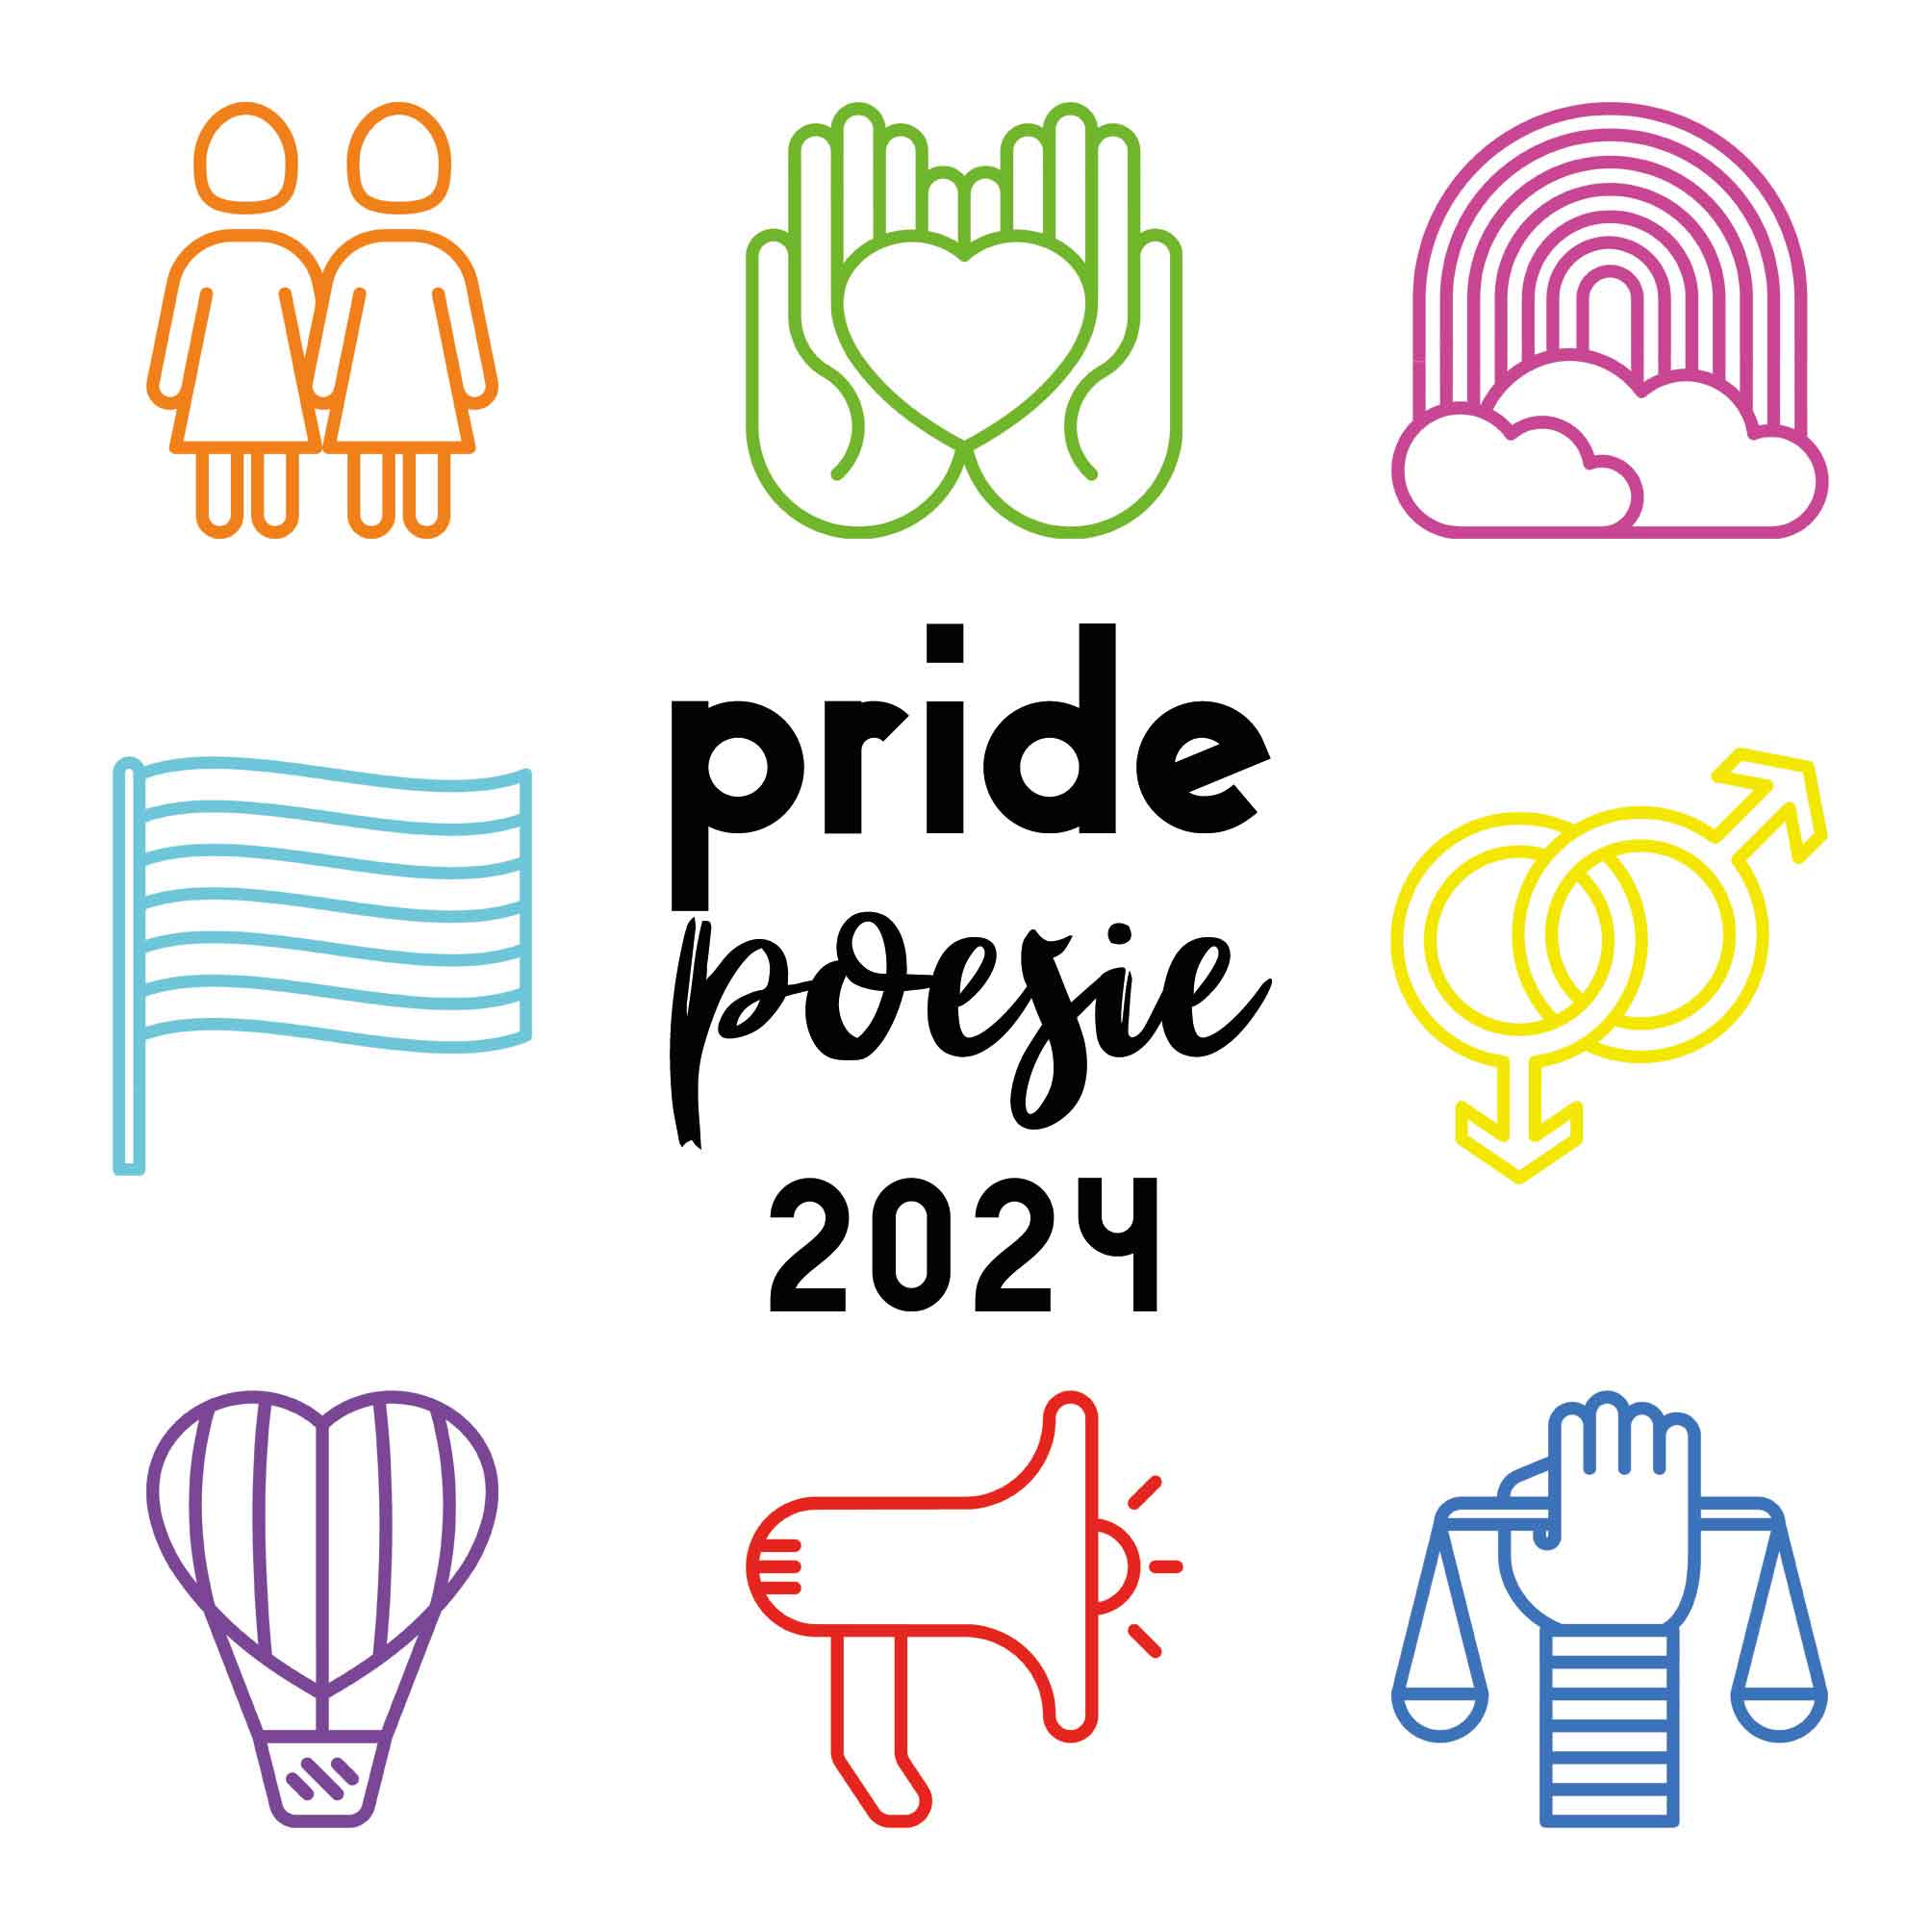 Pride-Poesie, 2024, Buch, lyrisches Live-Programm, Podcast-Stage, dieses Jahr, ColognePride, CSD, Köln, NRW, homochrom